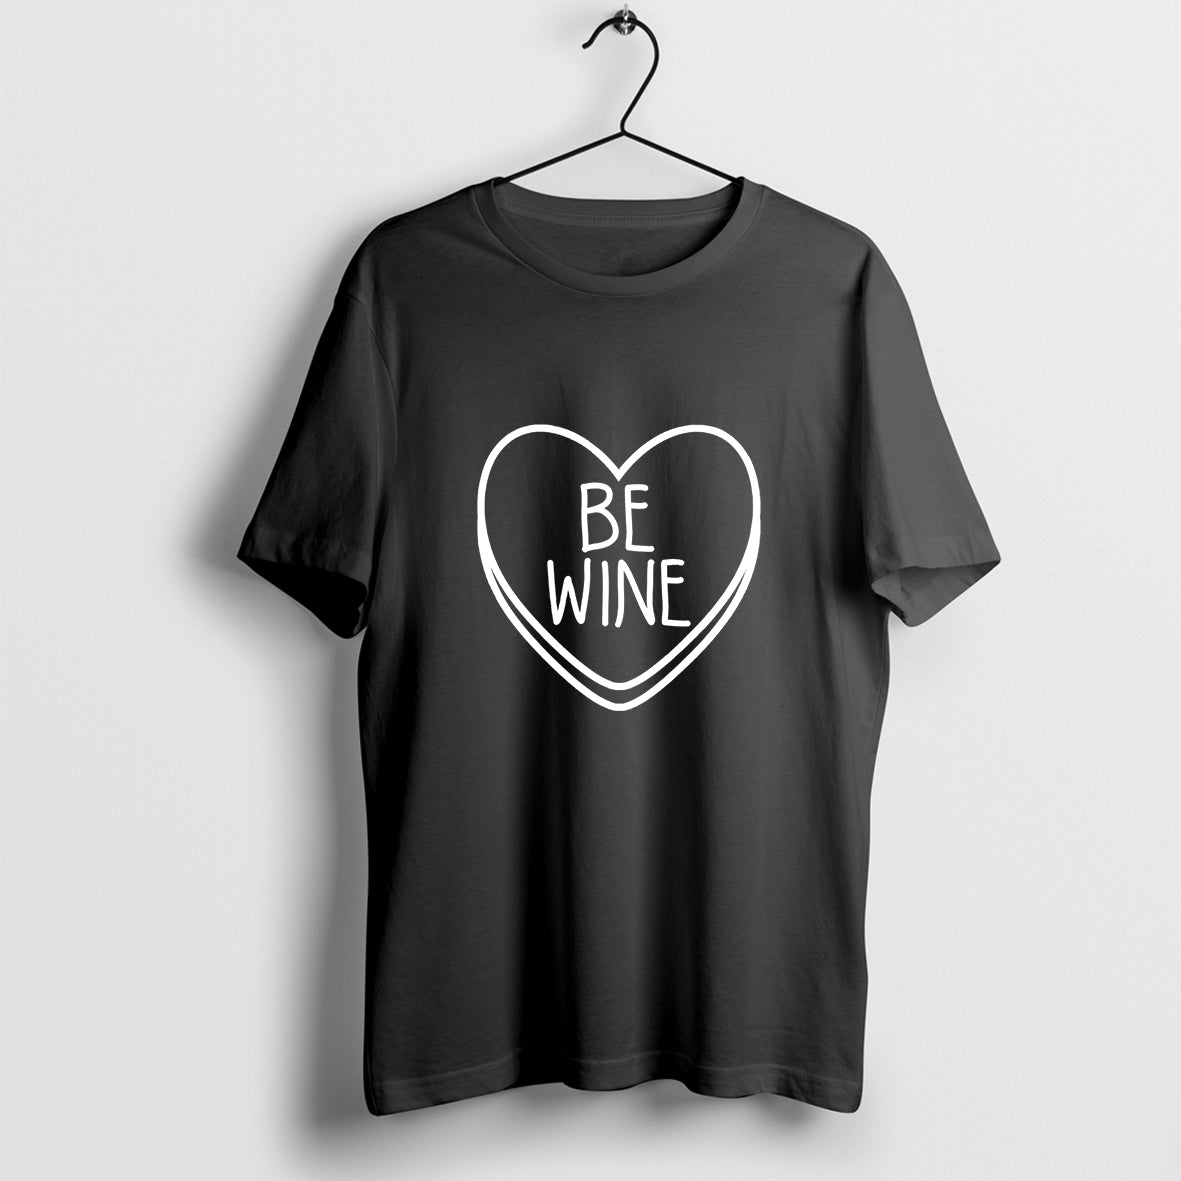 Be Wine Candy Heart T-Shirt, Love Shirt, Heart Shirt, Anti Valentine Day Shirt, Funny Heart Shirt